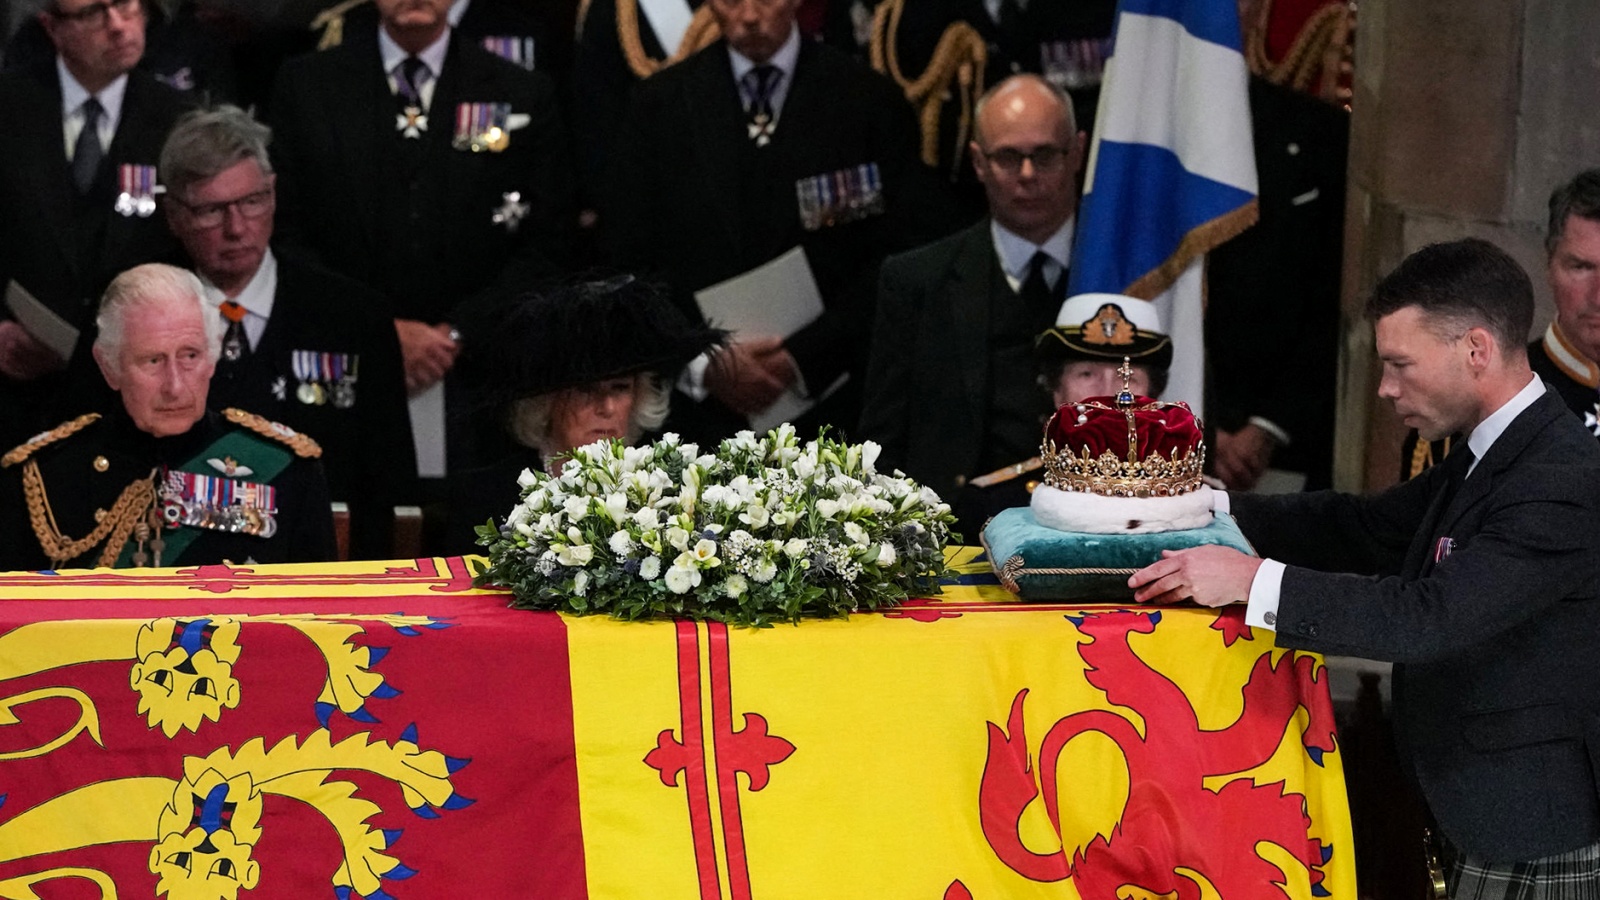 الملك تشارلز الثالث وزوجته كاميلا إلى جانب نعش الملكة الراحلة إليزابيث الثانية في كاتدرائية سانت جايلز في إدنبره في 12 سبتمبر 2022